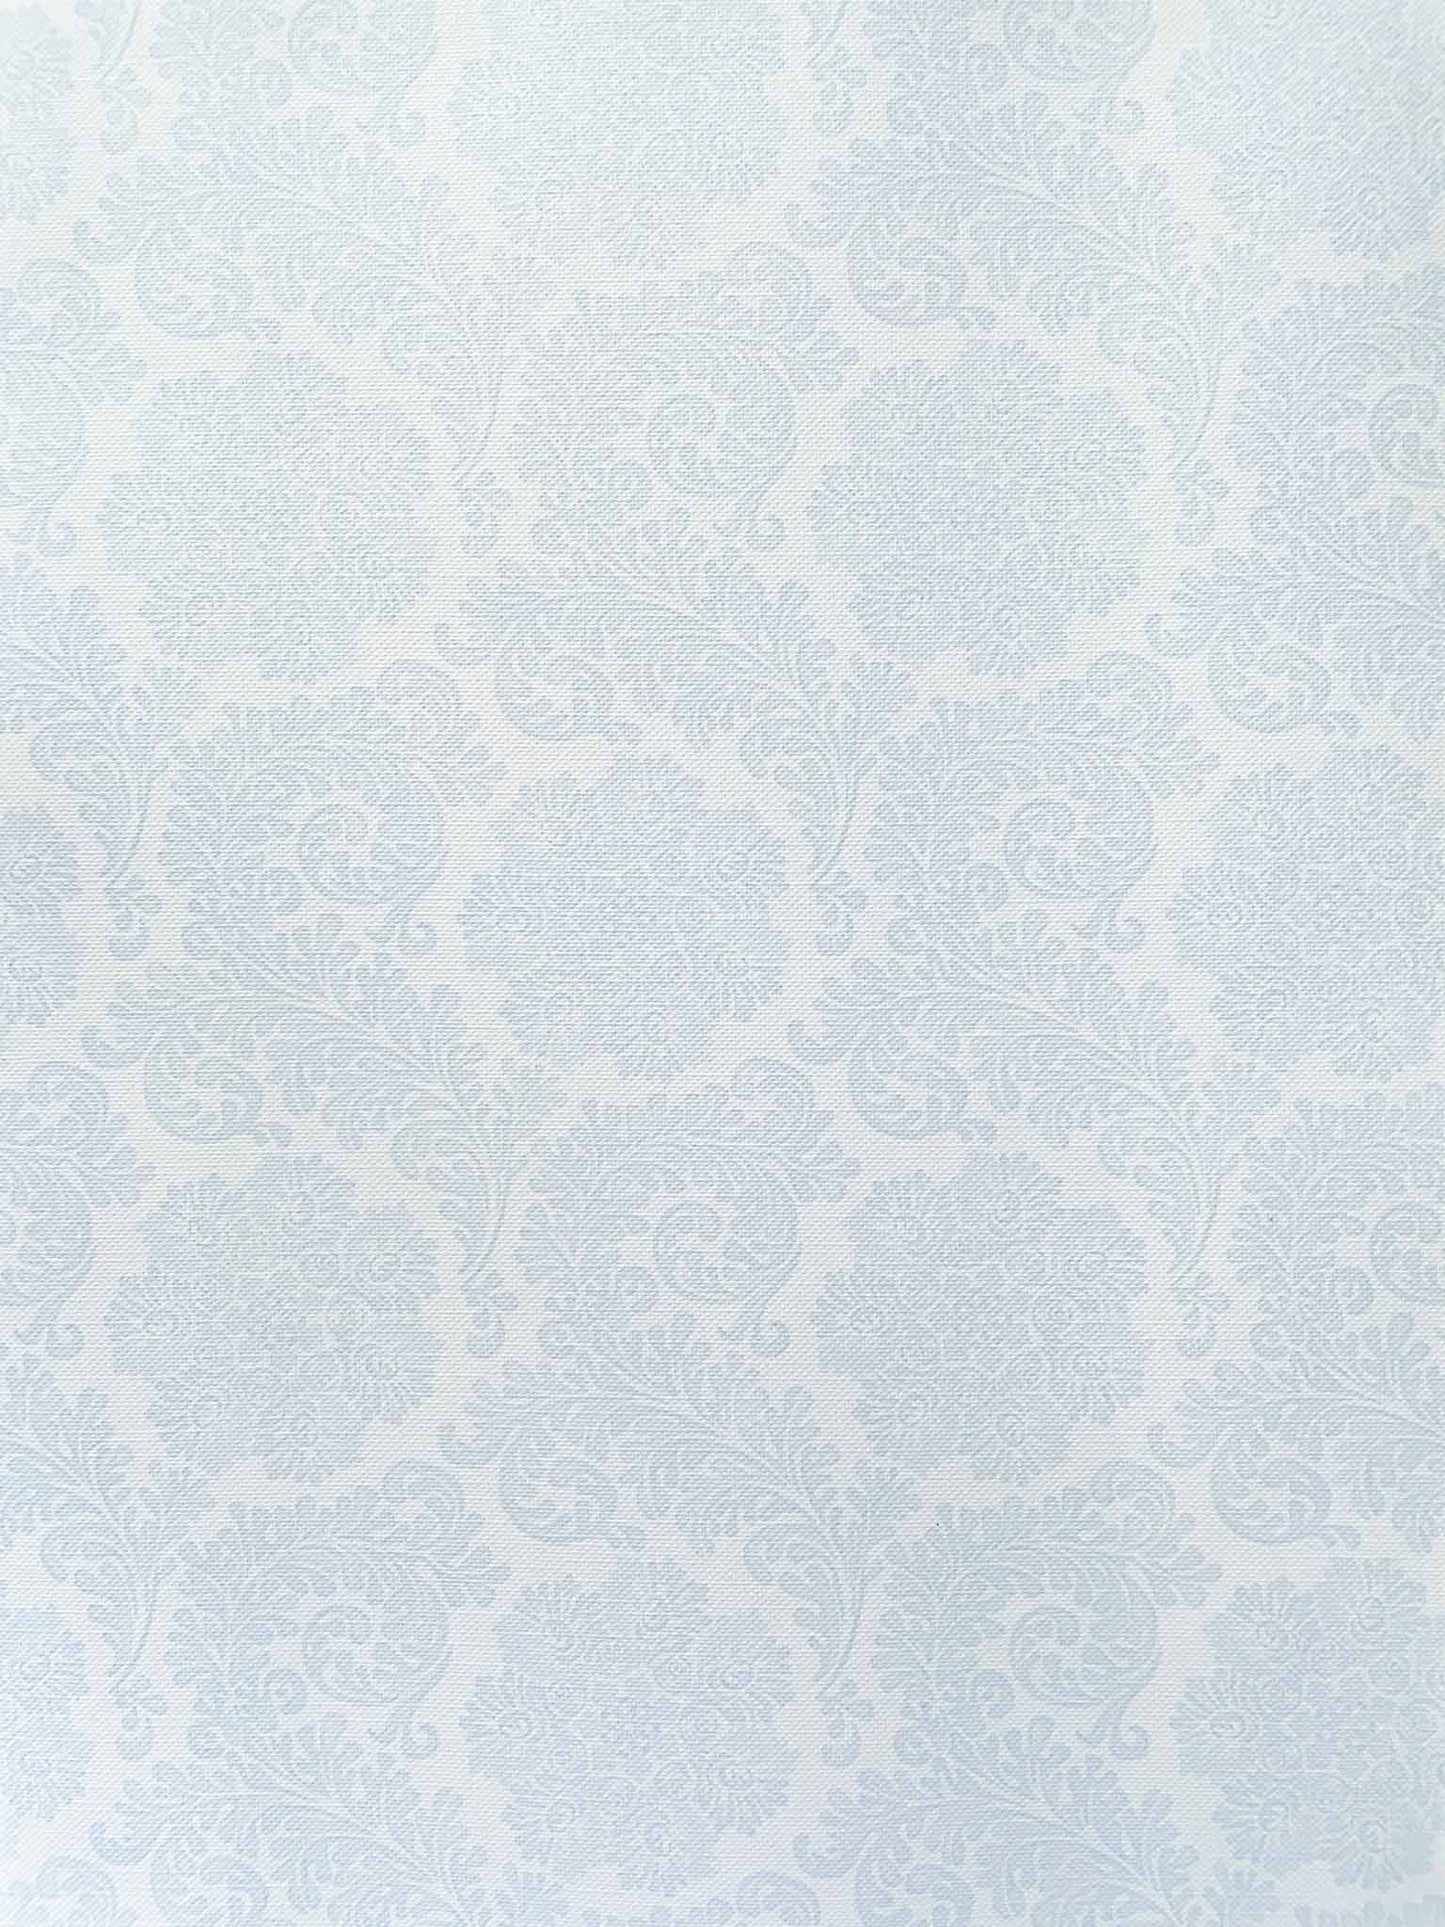 pale-blue-decorative-a4-paper